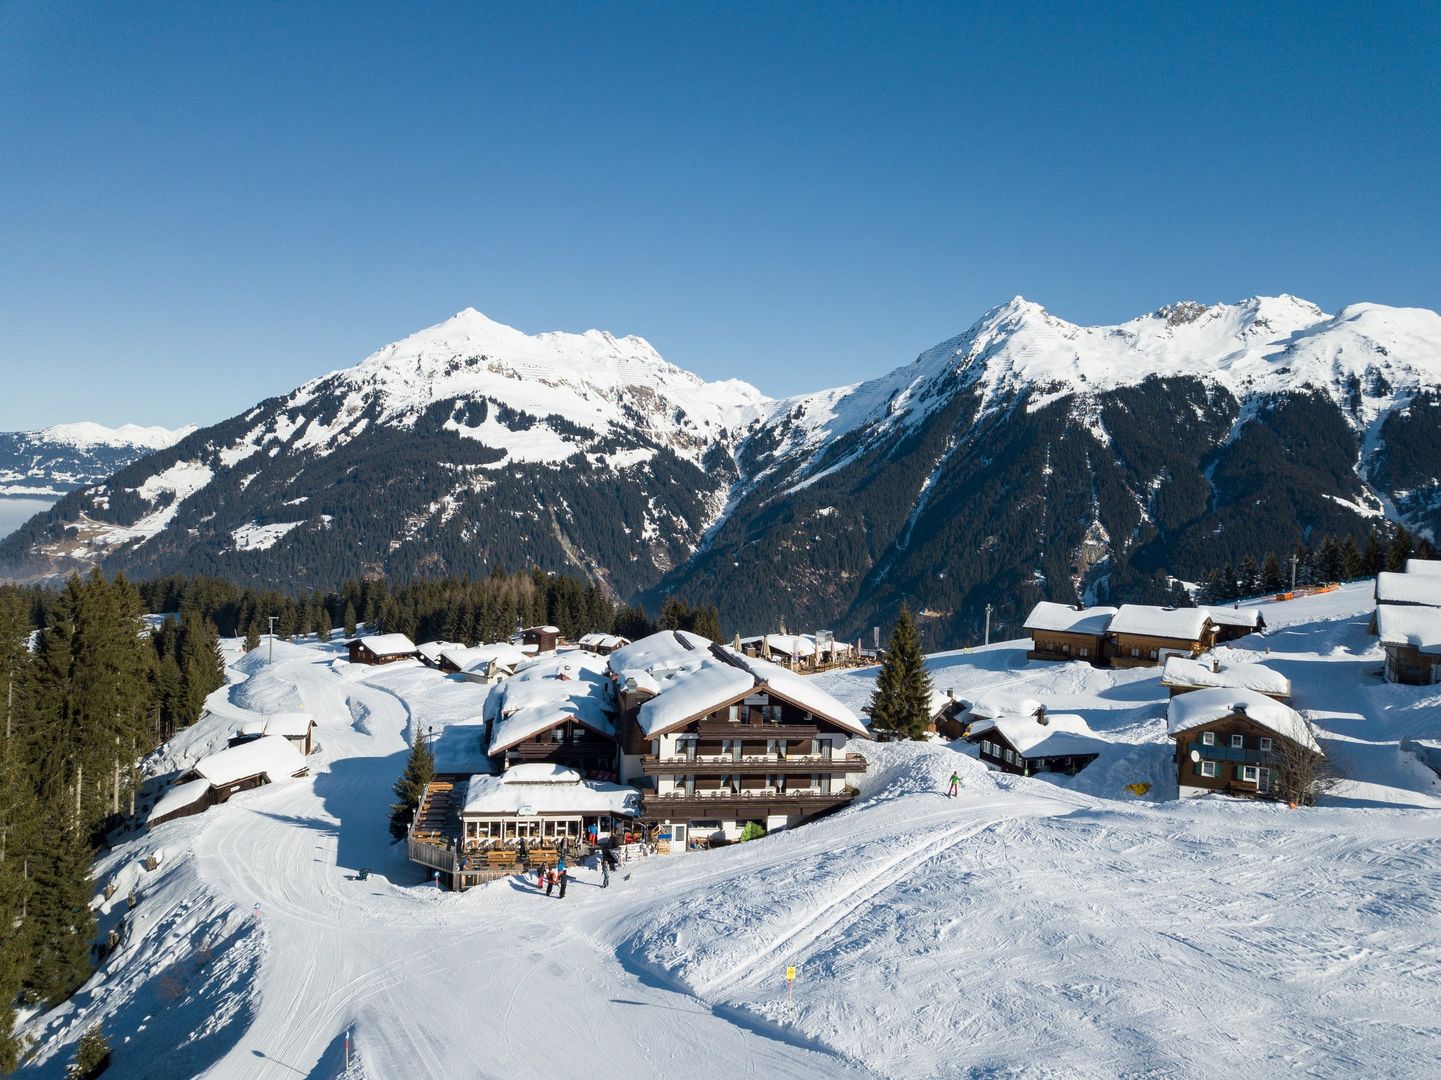 Meer info over Alpenhotel Garfrescha  bij Wintertrex